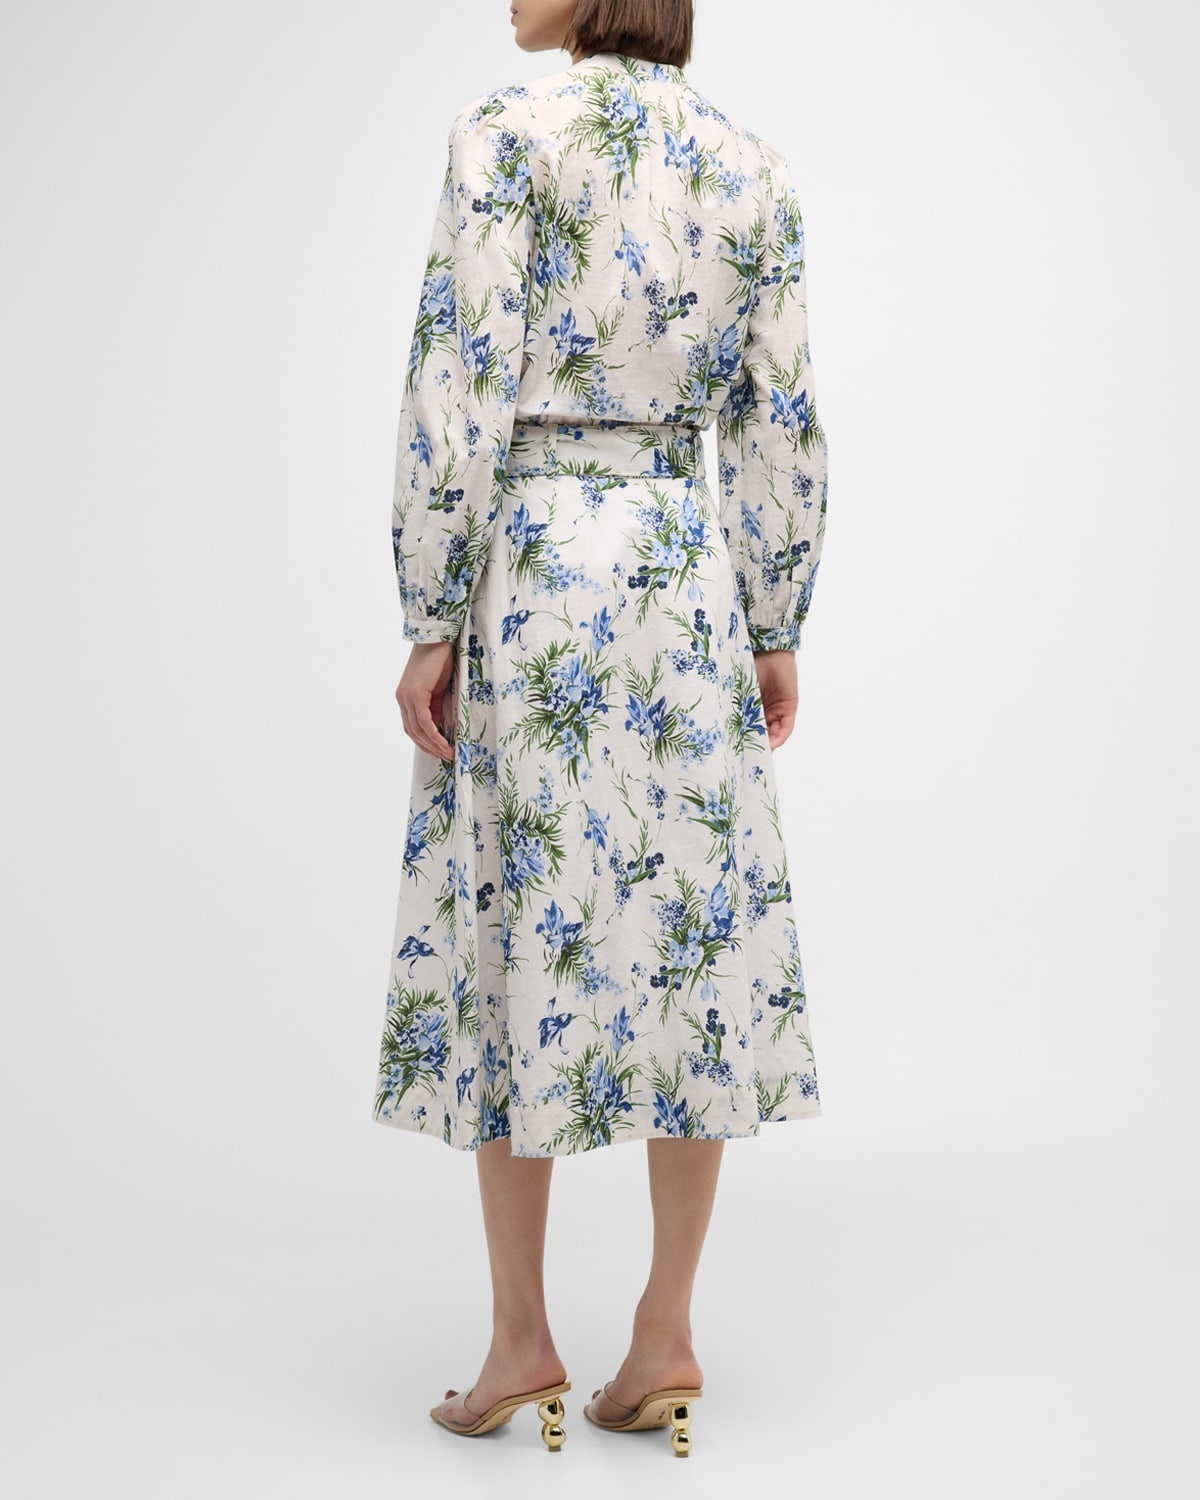 Arwen Floral Belted Midi Skirt - 5